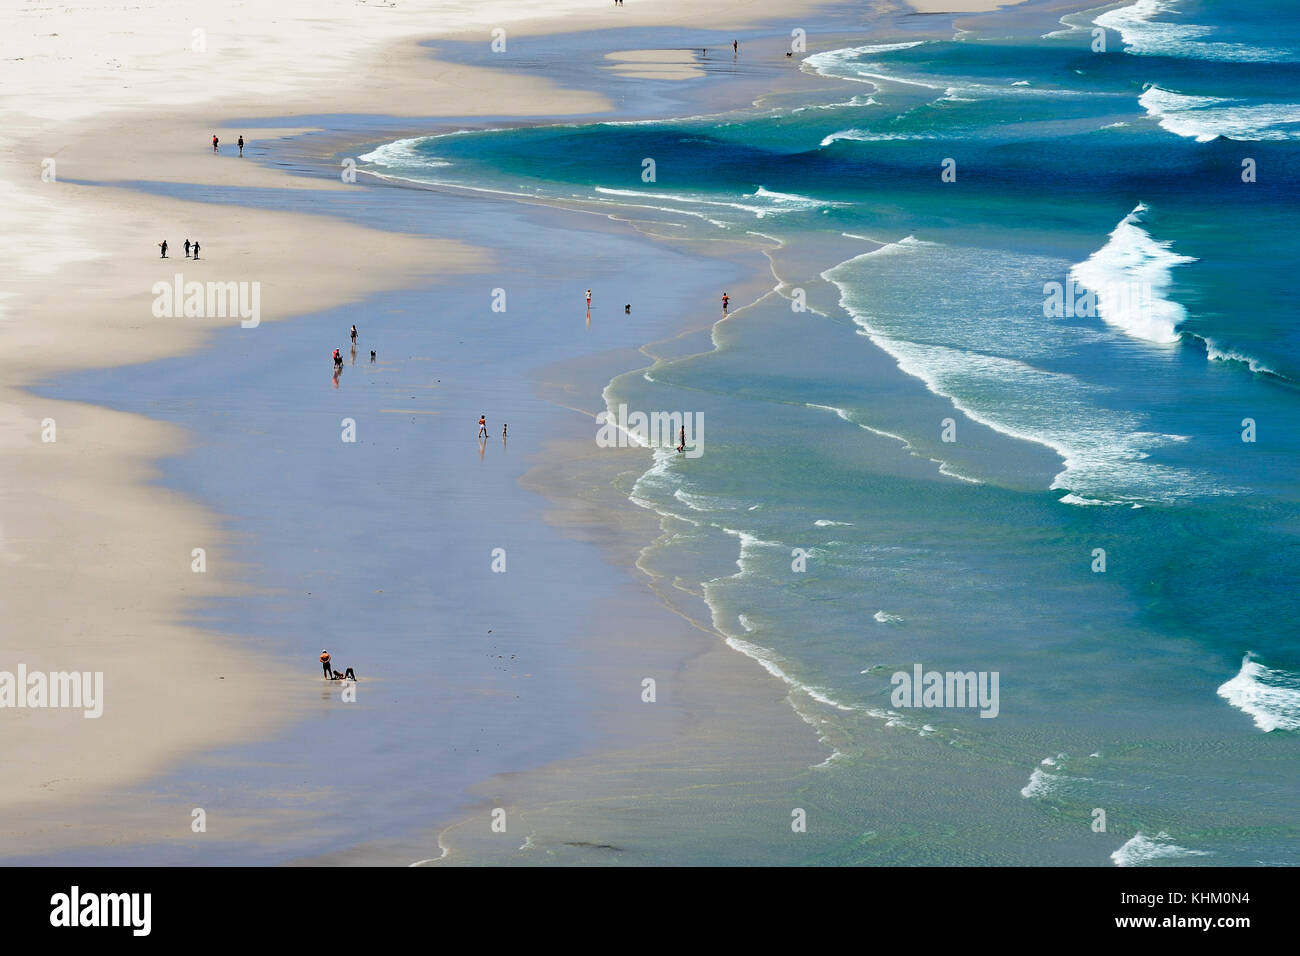 Ampia spiaggia di sabbia con onde, noordhoek Beach, Città del Capo, Western Cape, Sud Africa Foto Stock